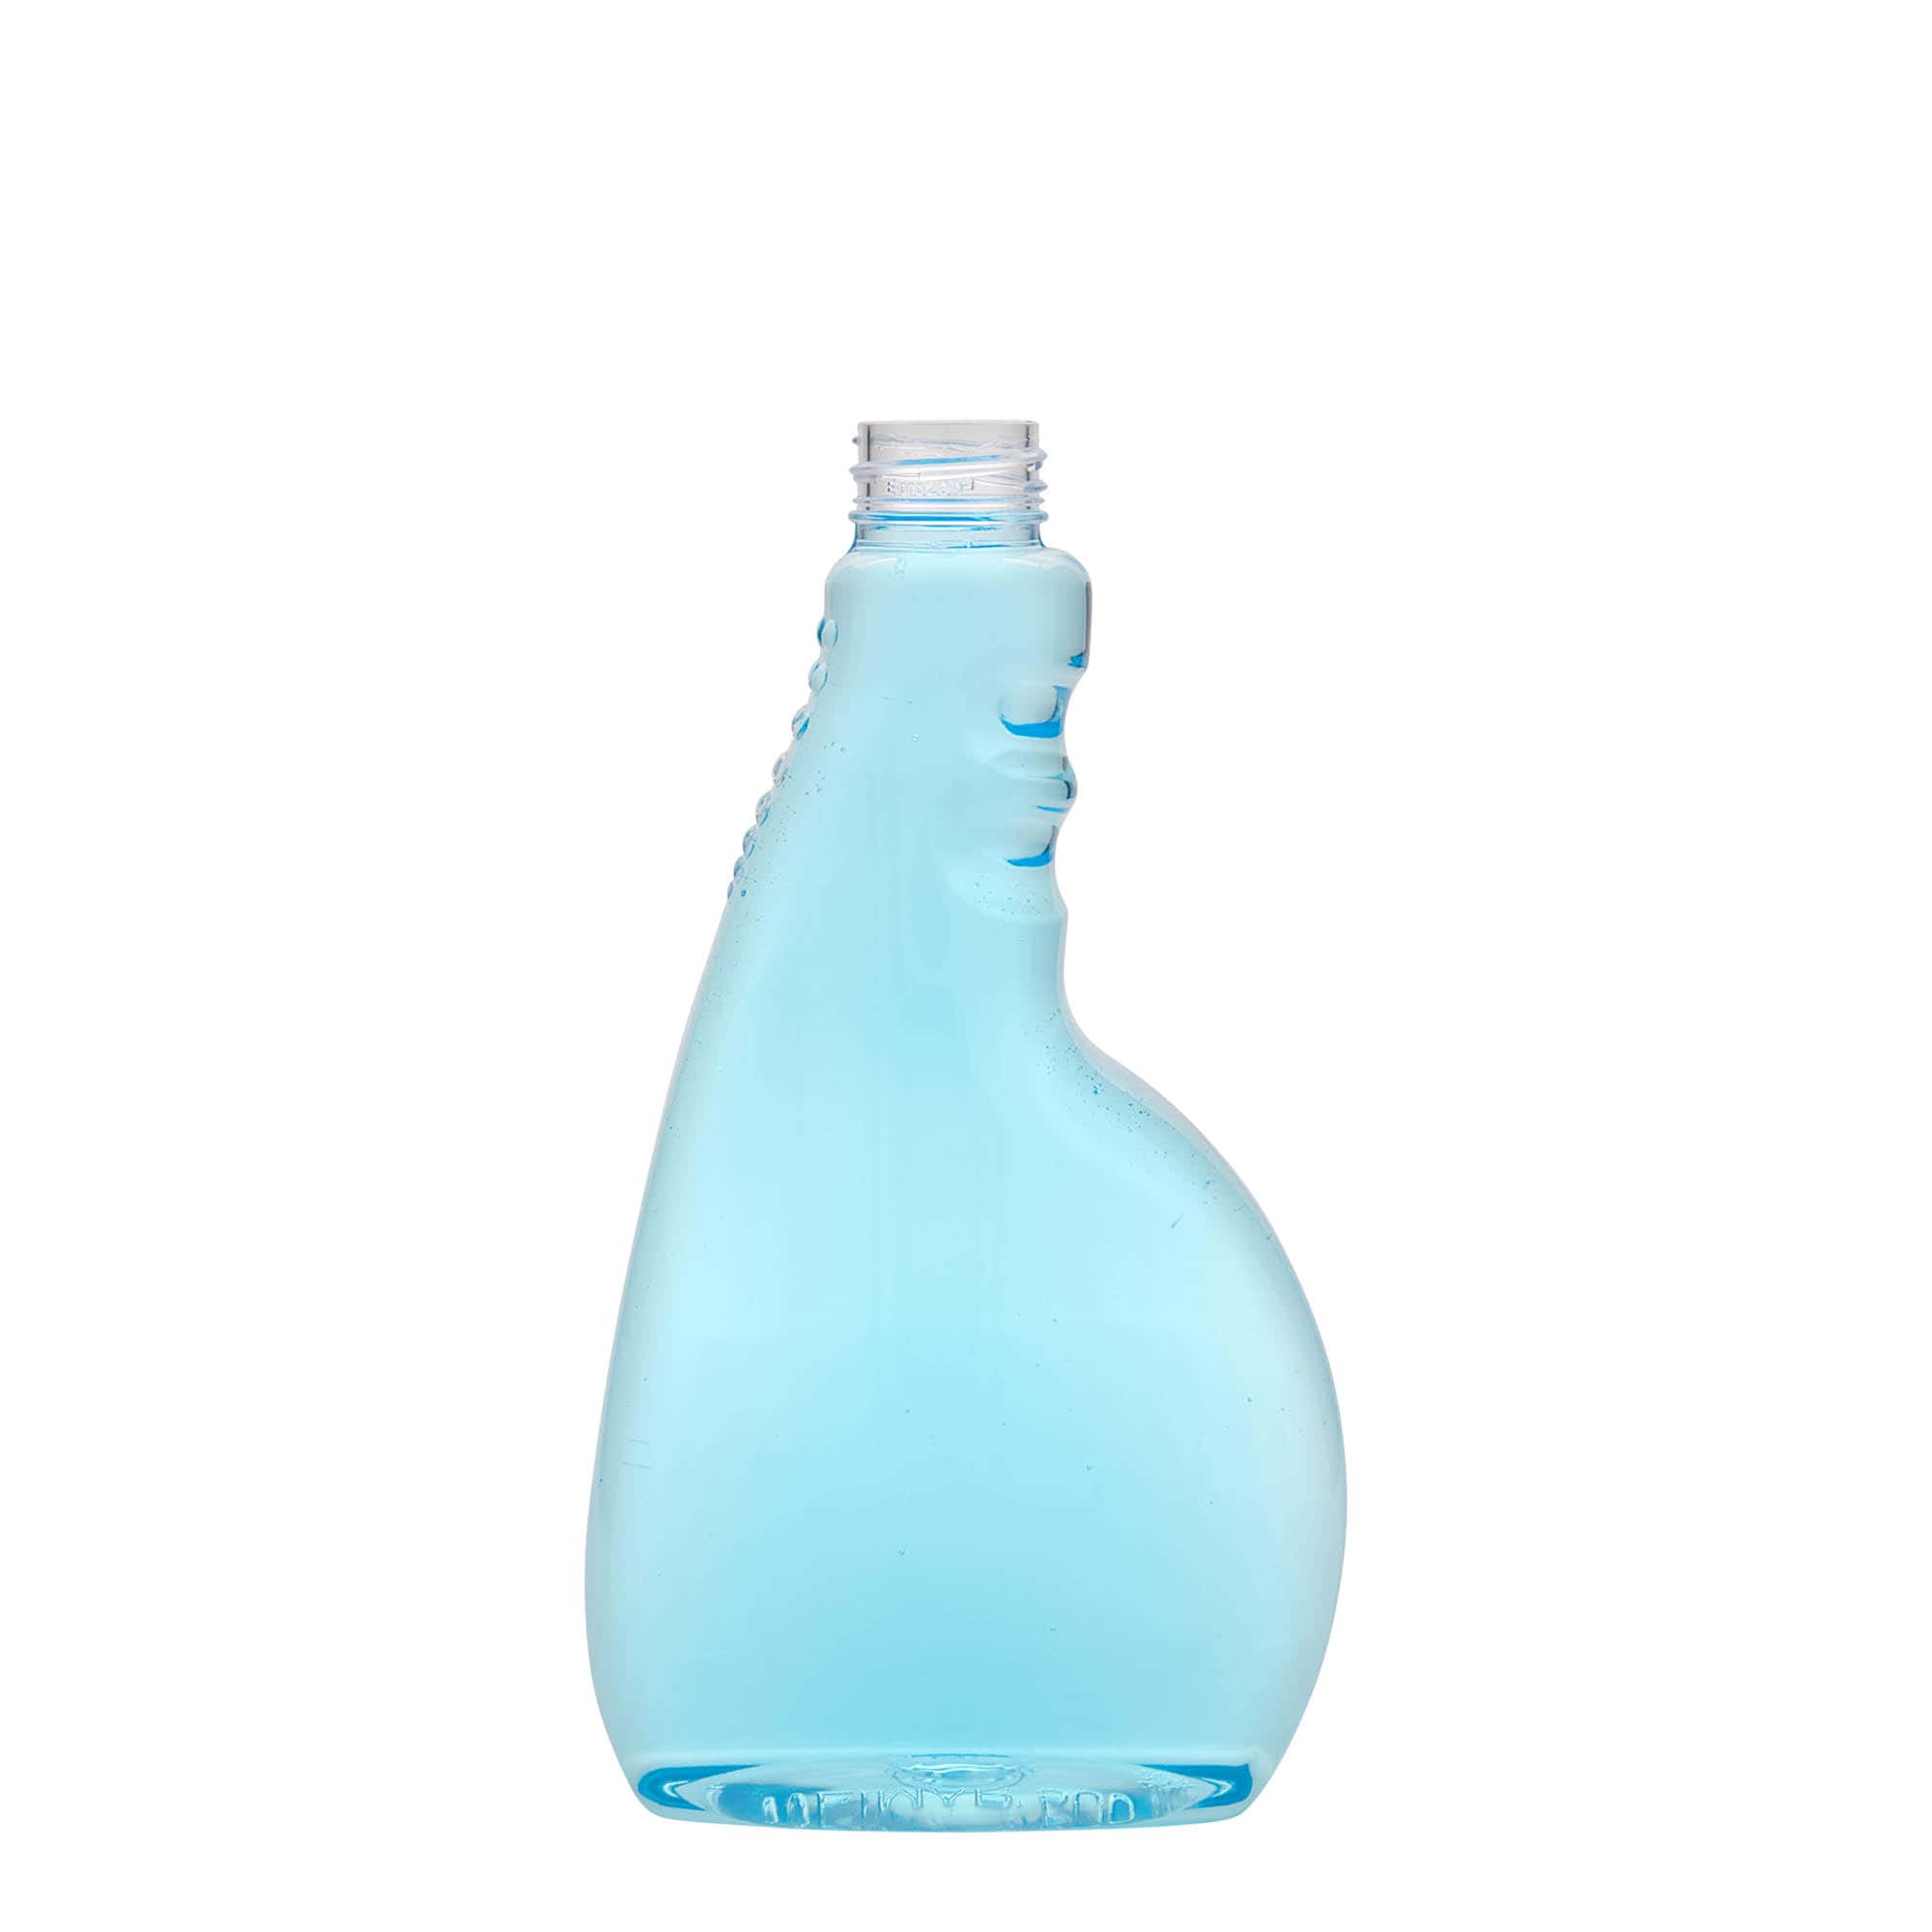 500 ml PET spray bottle 'Piccobello', rectangular, plastic, closure: screw cap